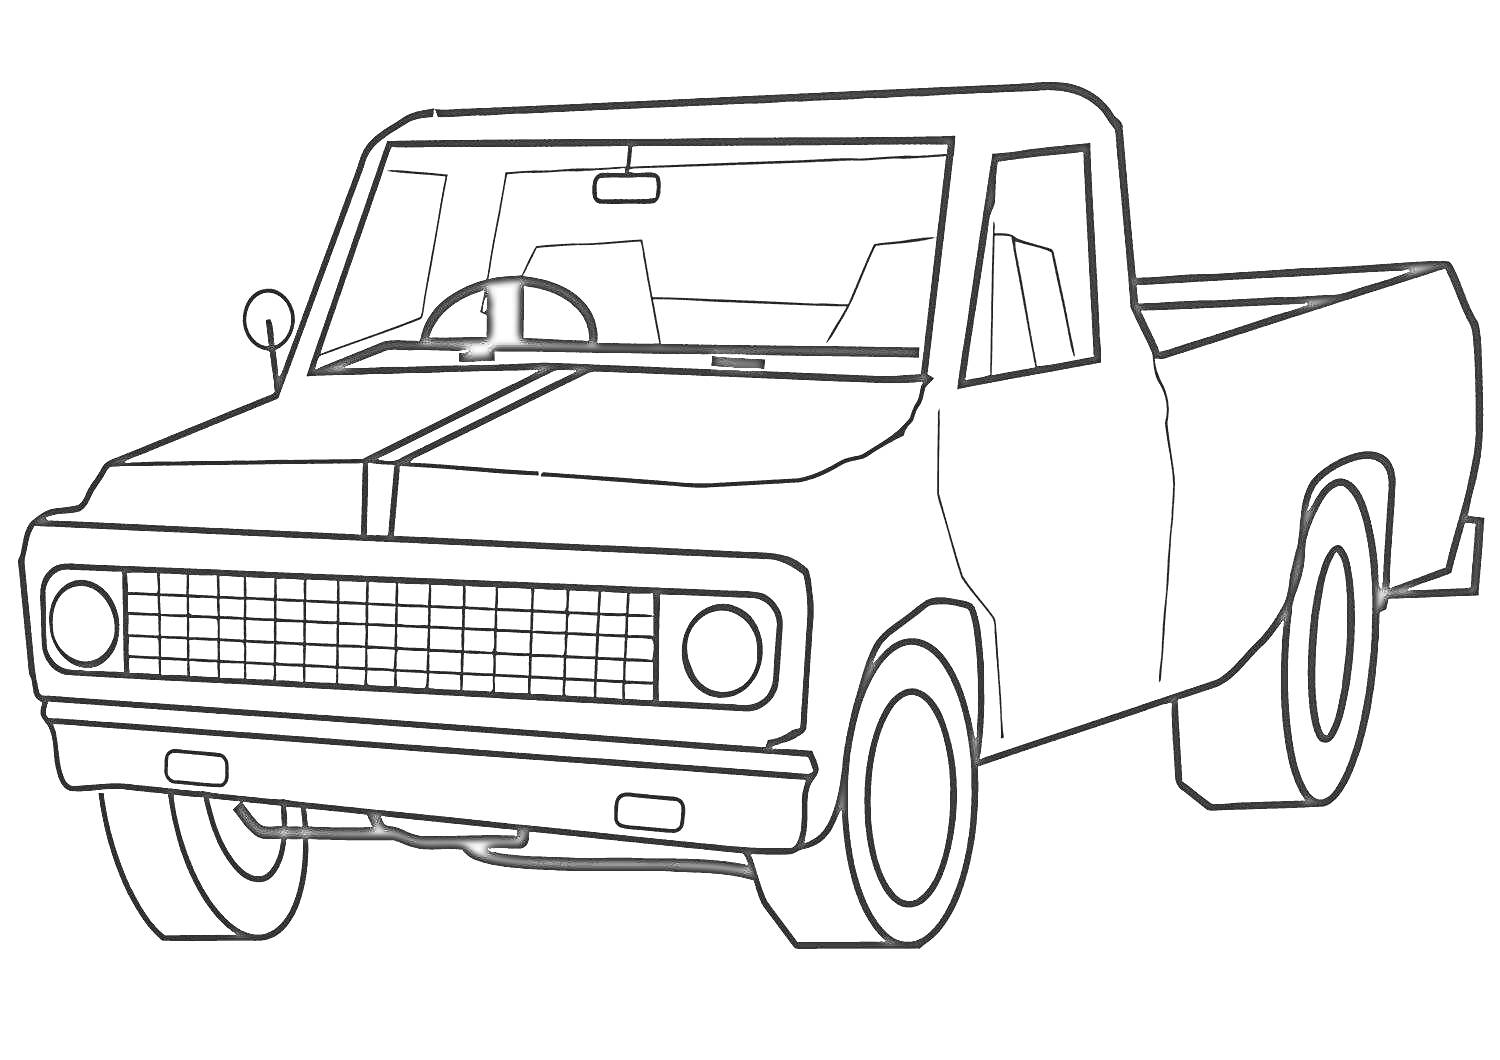 Пикап с передней решёткой, передними фарами, передними и задними колёсами, боковыми окнами и задним кузовом